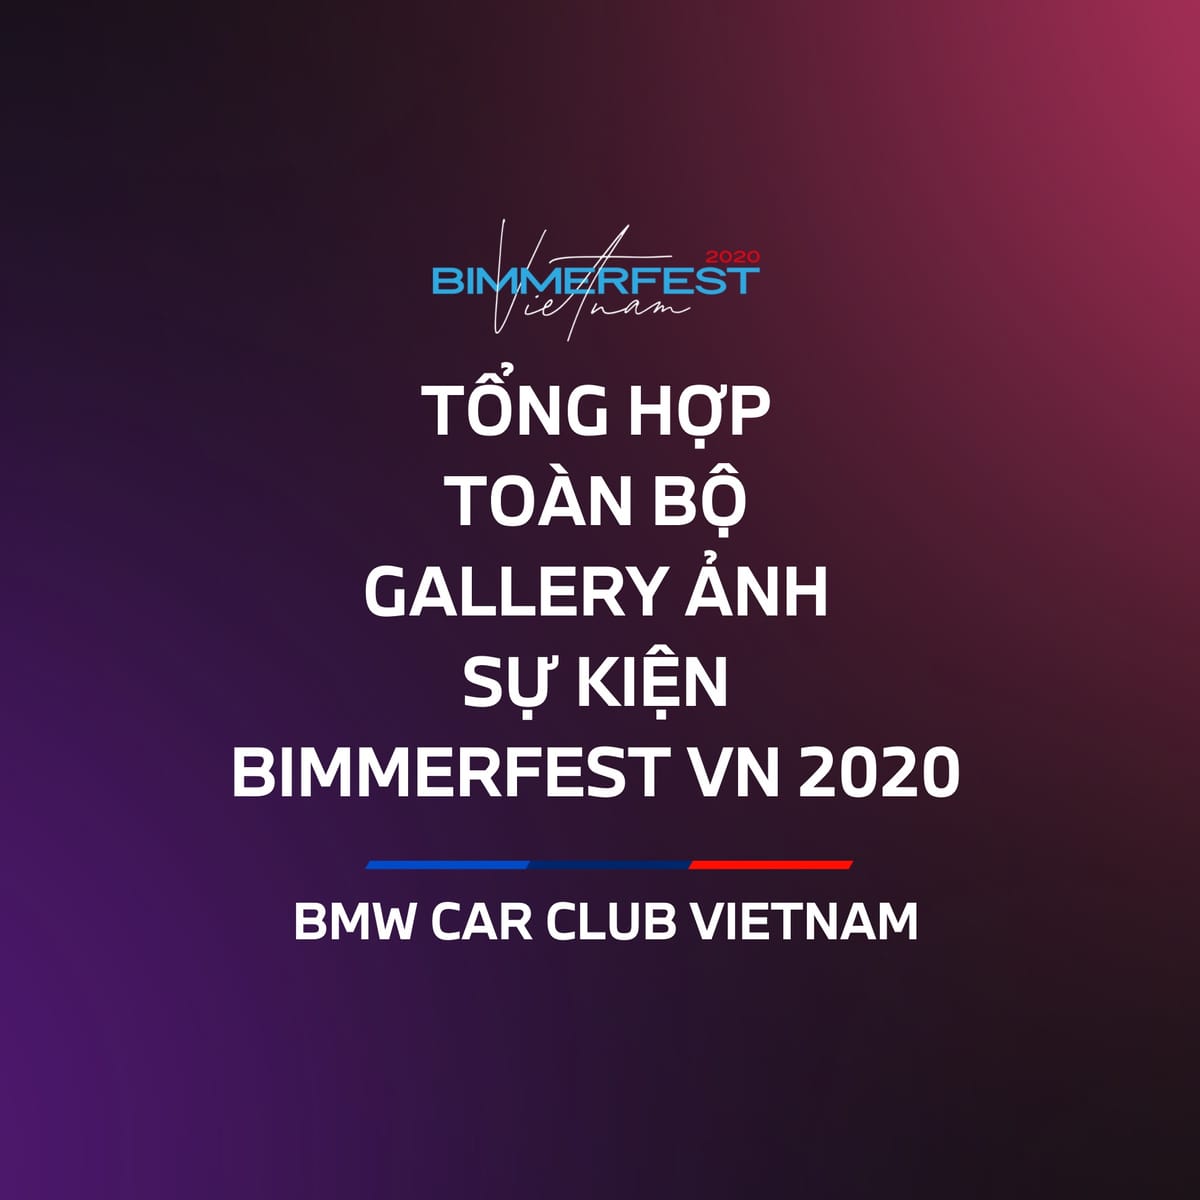 Tổng hợp toàn bộ Gallery ảnh sự kiện Bimmerfest Vietnam 2020